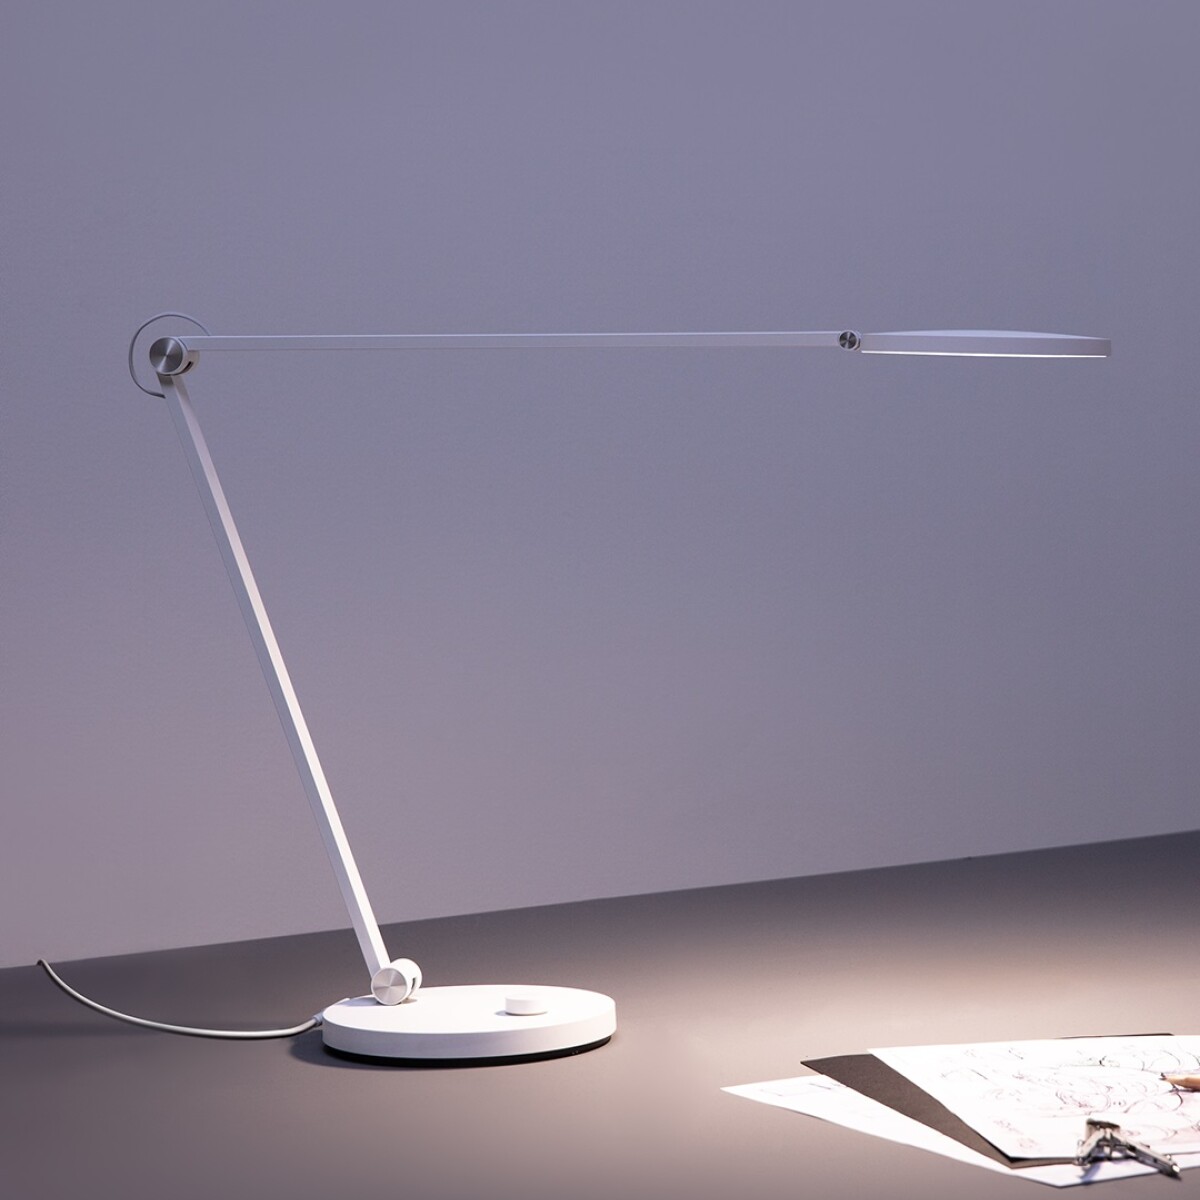 MI SMART LED DESK LAMP PRO XIAOMI | LAMPARA DE ESCRITORIO SMART Blanco